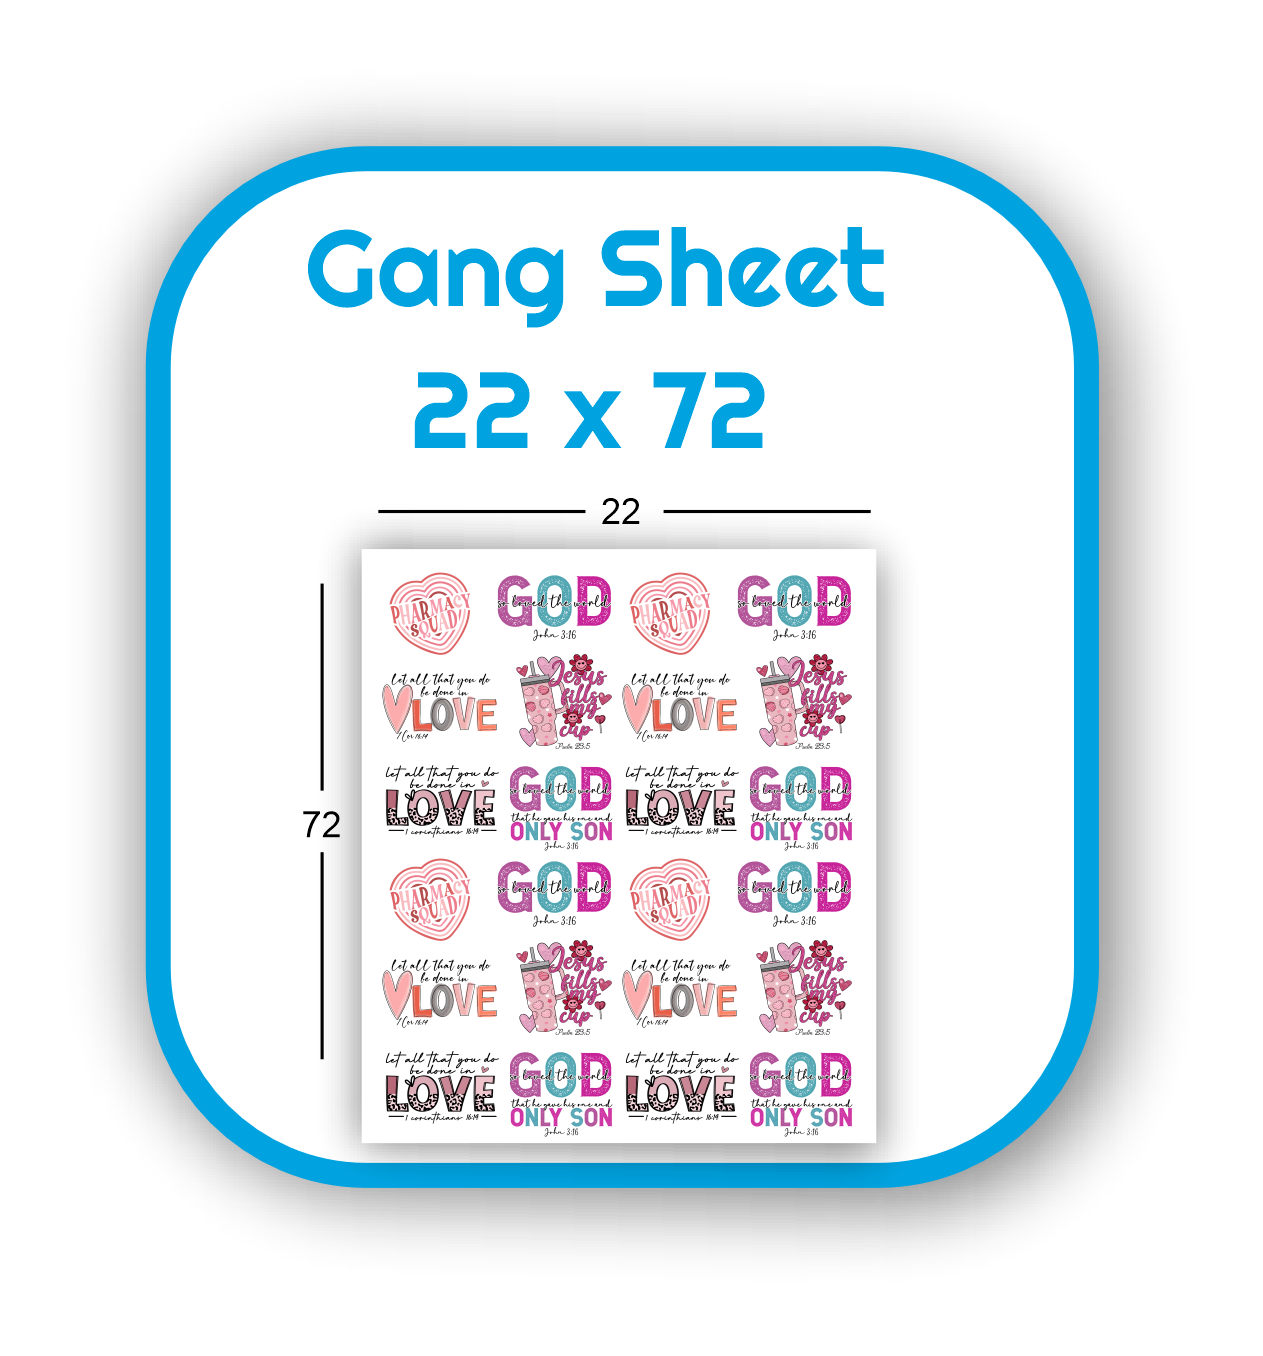 gang-sheet-22x72